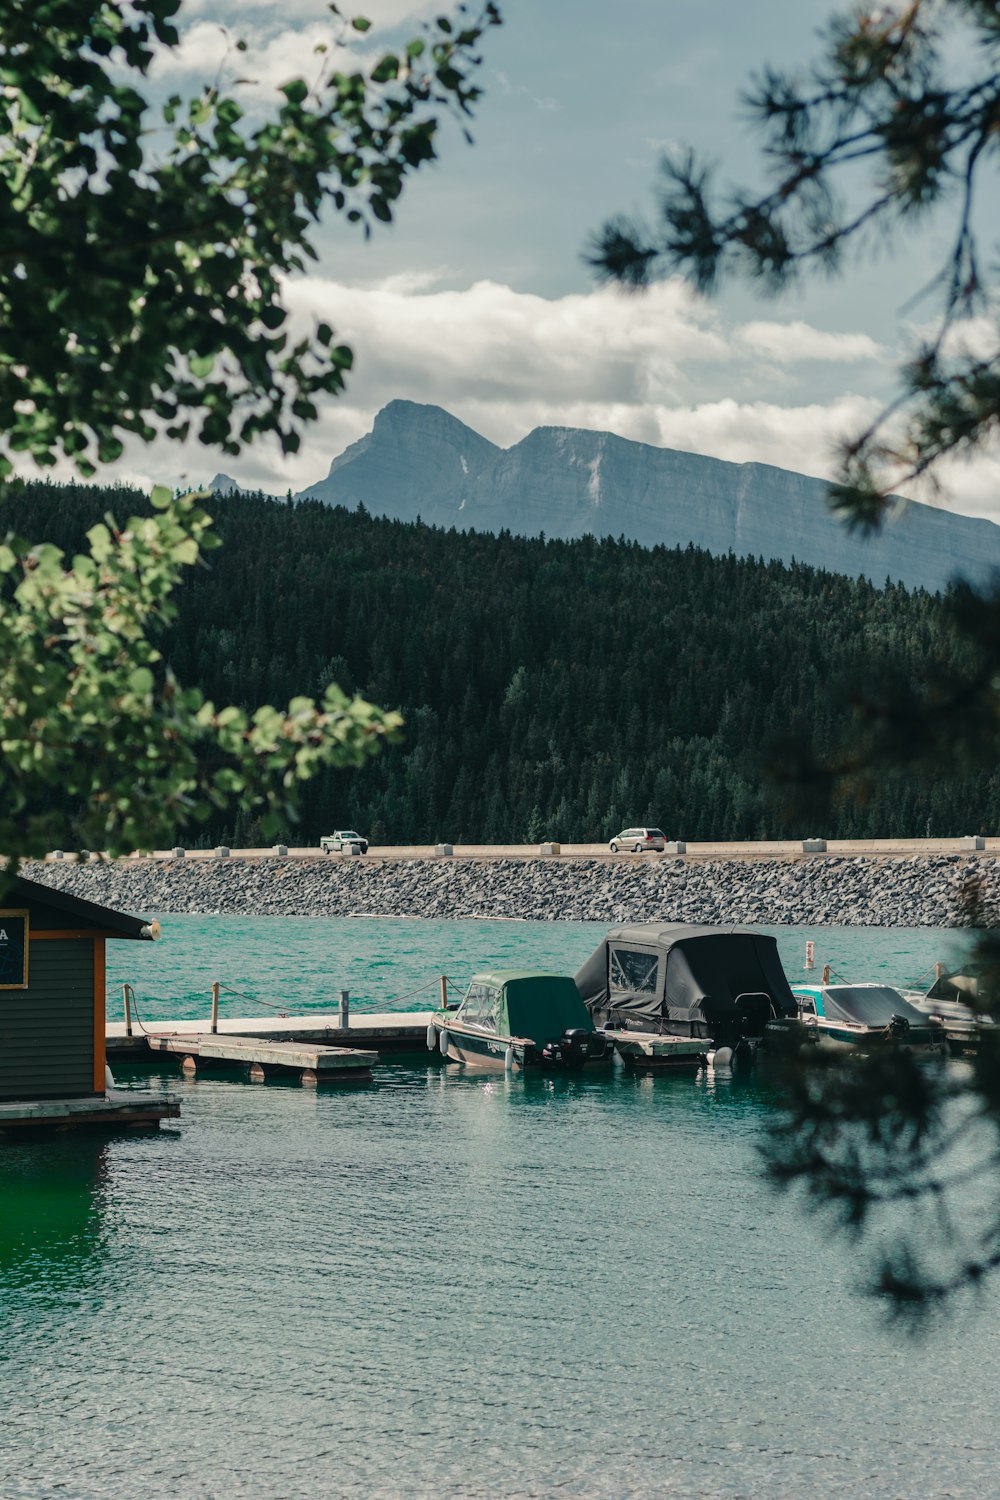 Maison en bois marron sur le quai du lac près des arbres verts et de la montagne pendant la journée